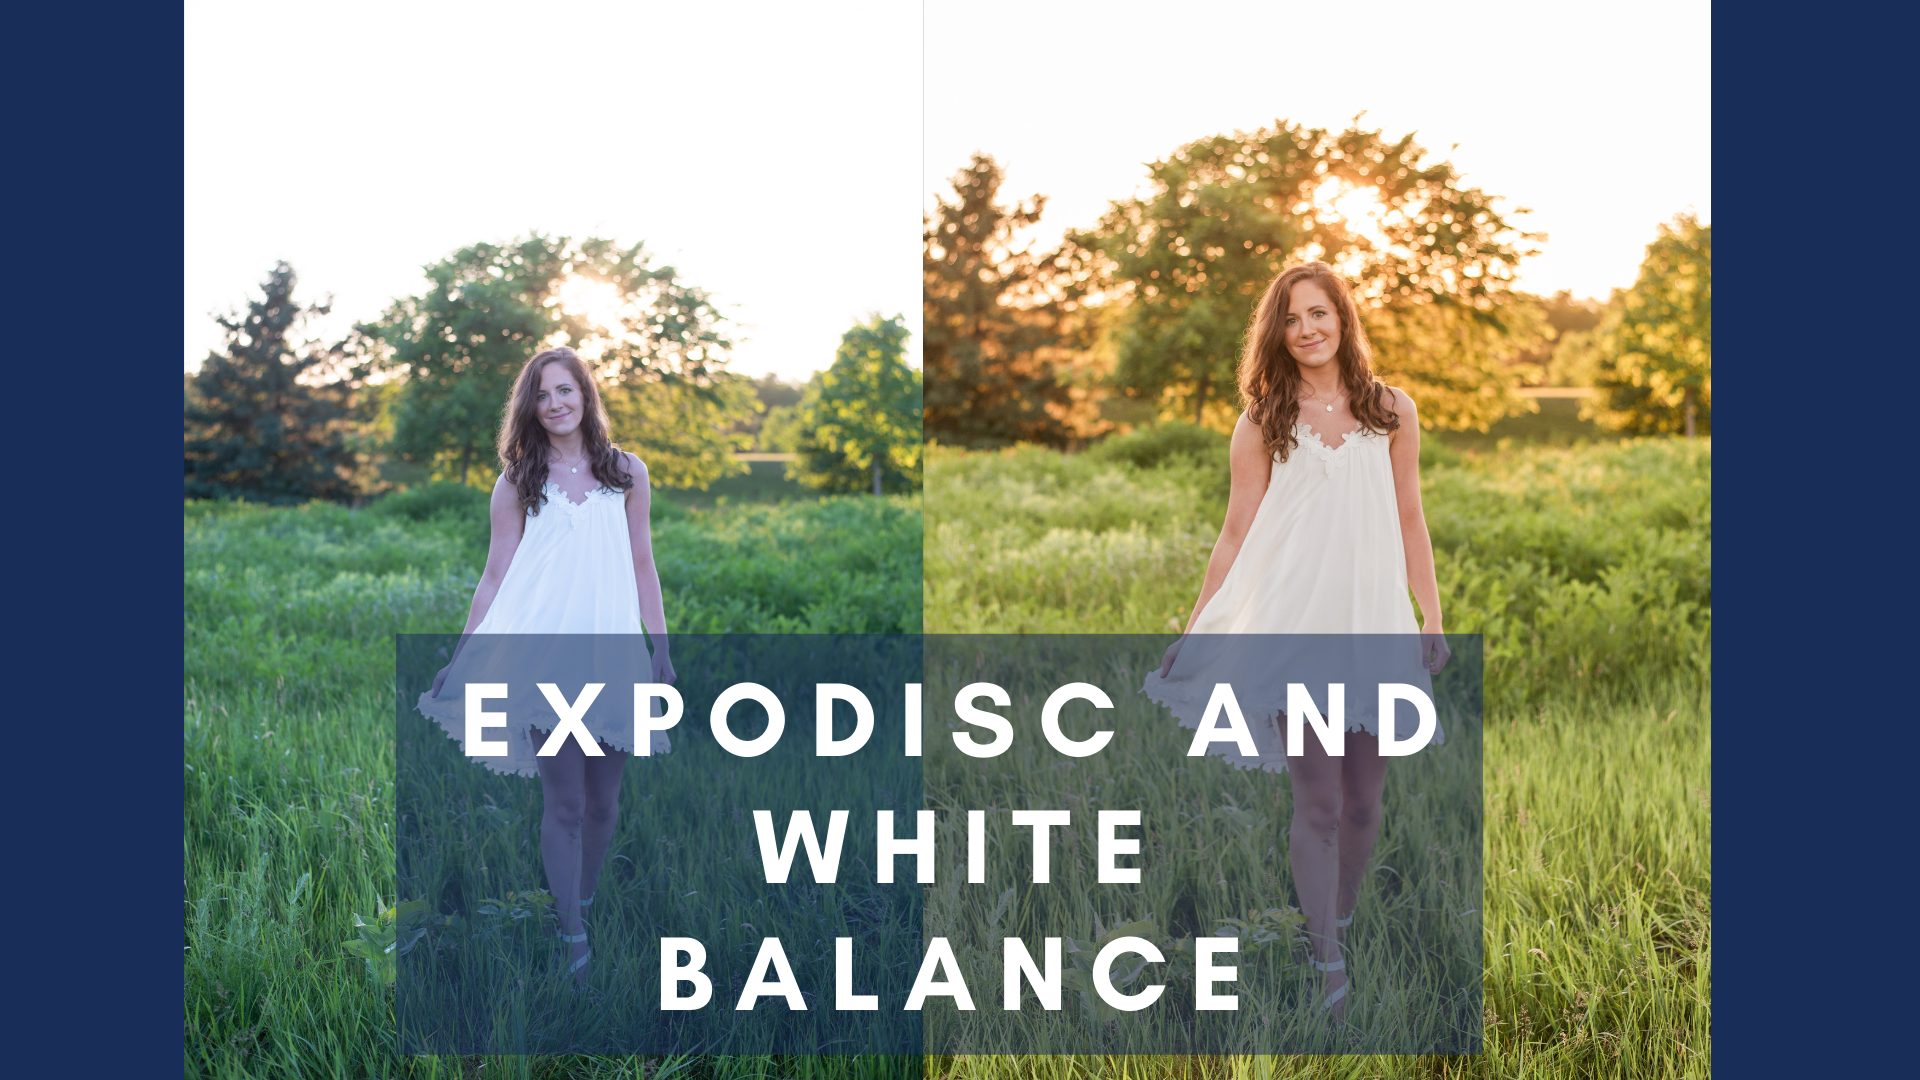 Expodisc and white balance